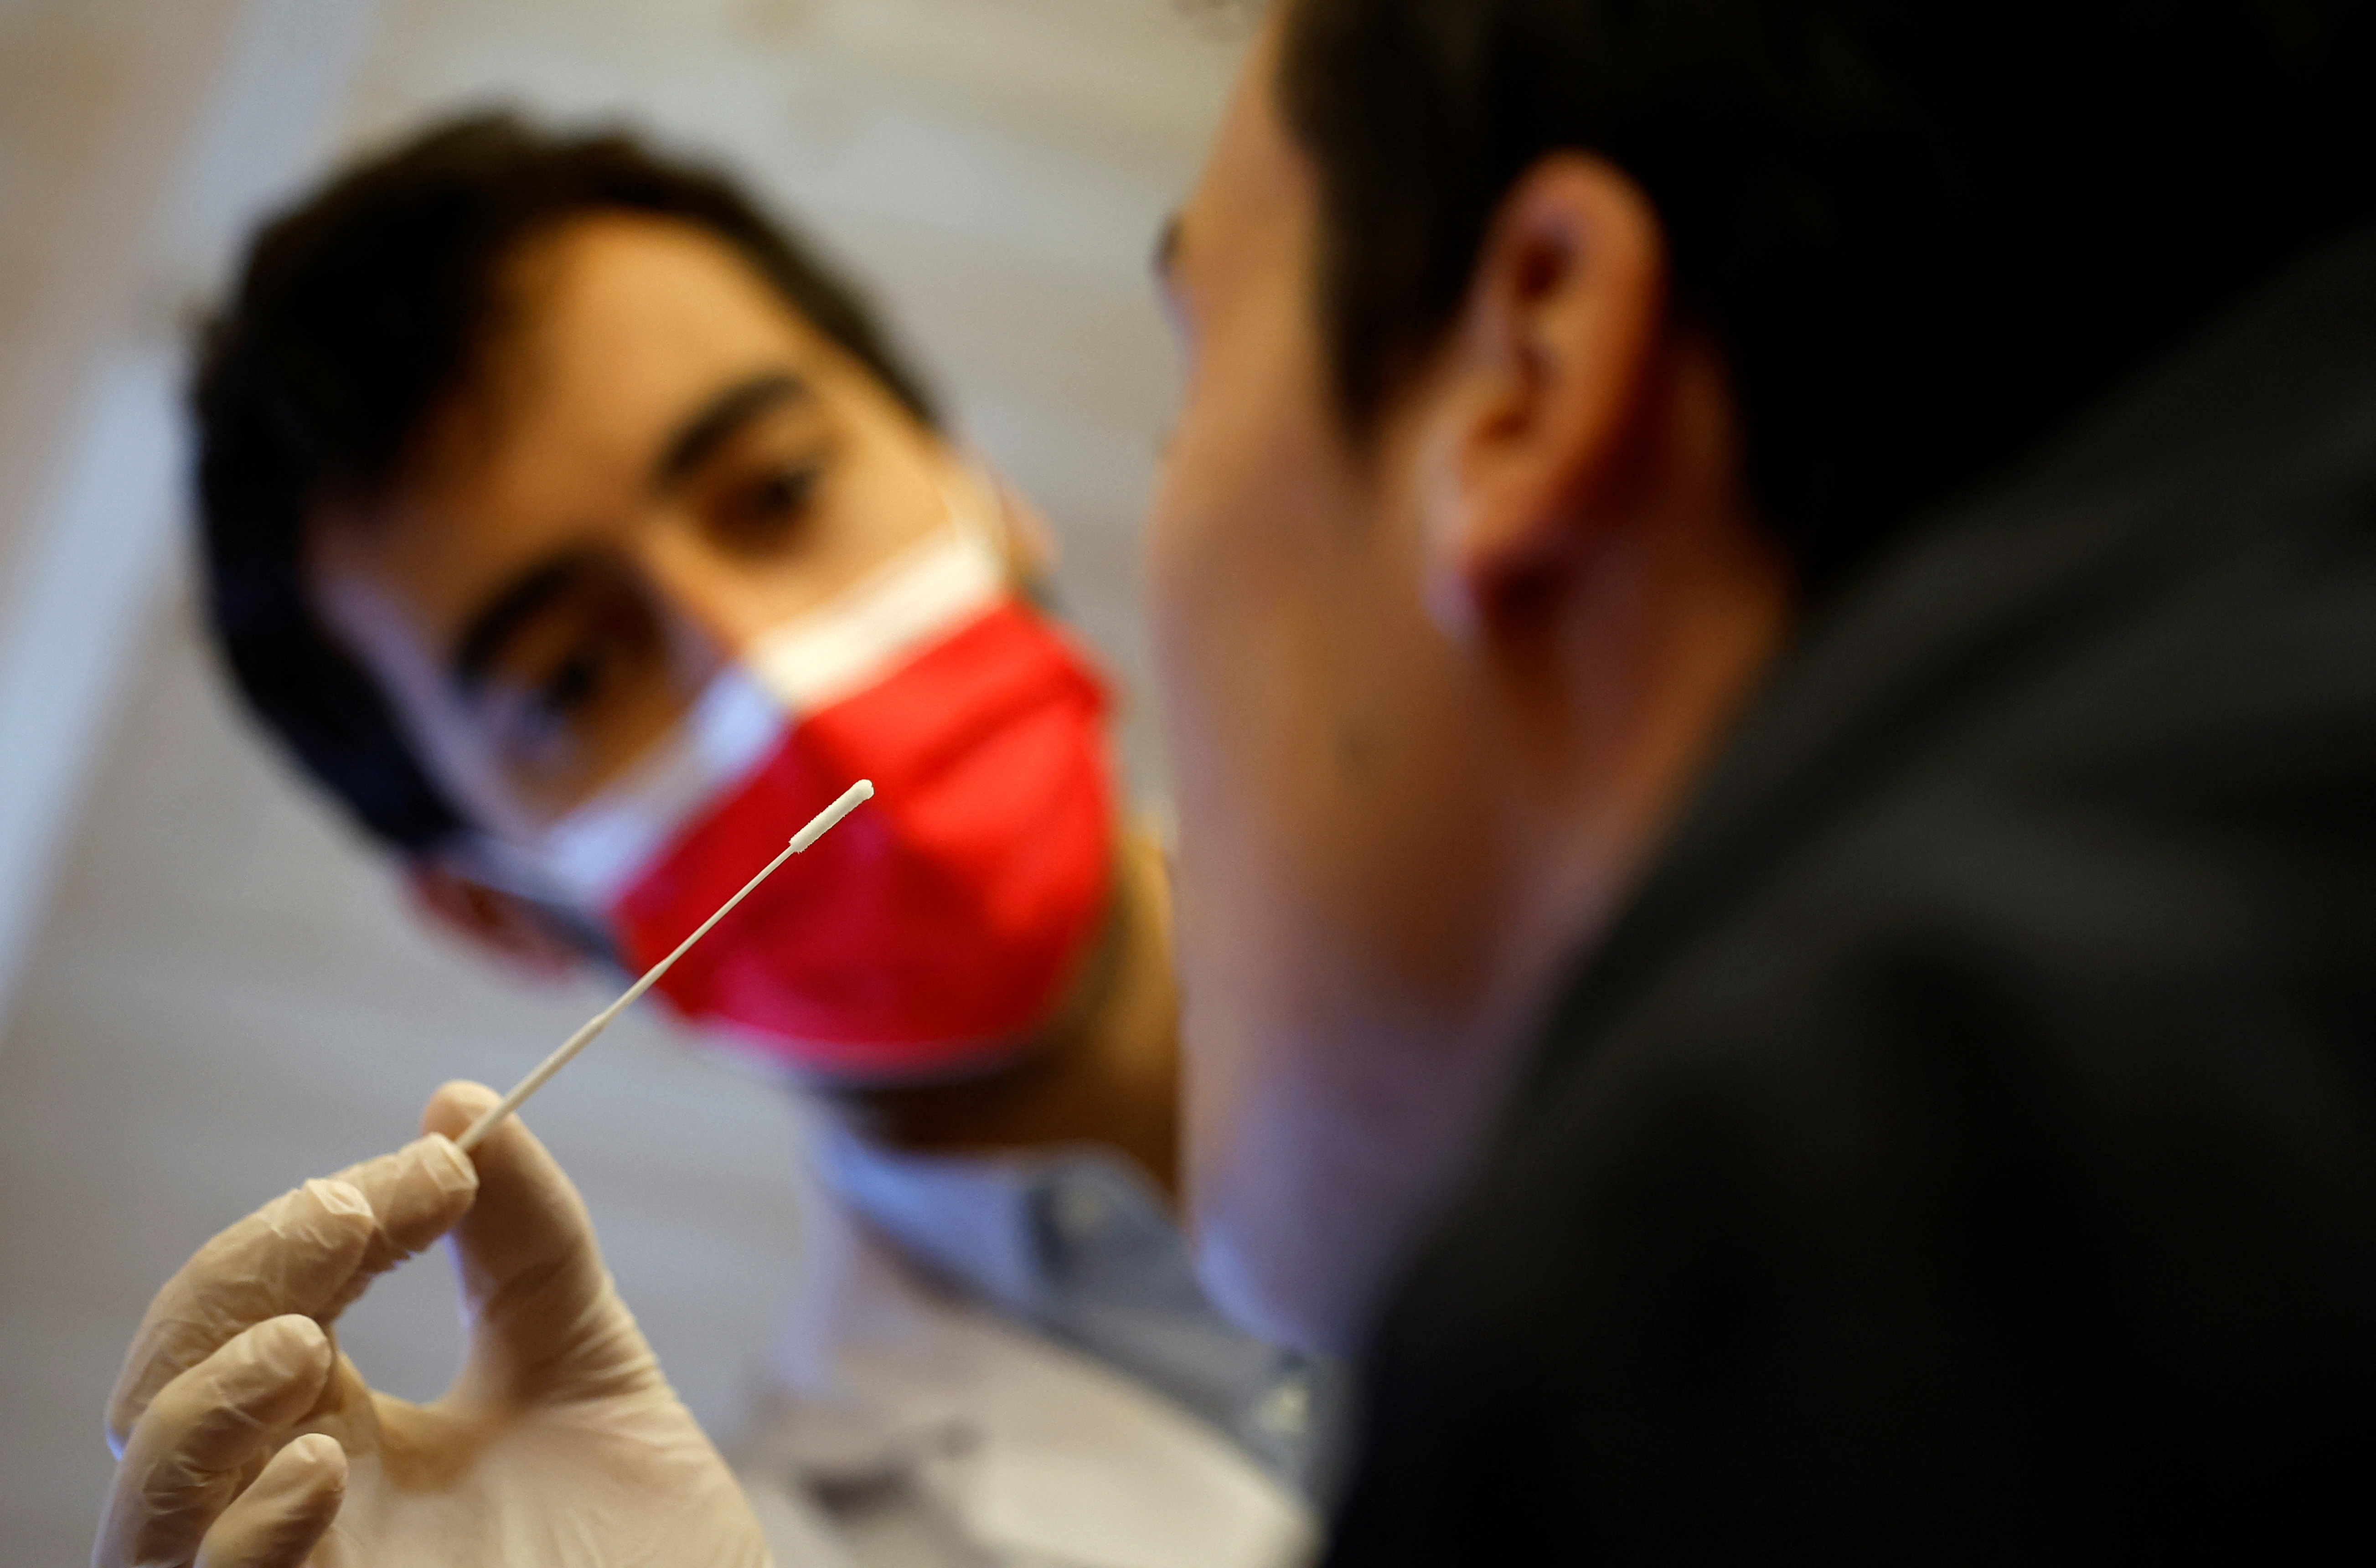 Los tests a partir de hisopados nasales permiten detectar si una persona tiene una infección viral. Pero no detectan los virus emergentes/REUTERS/Stephane Mahe